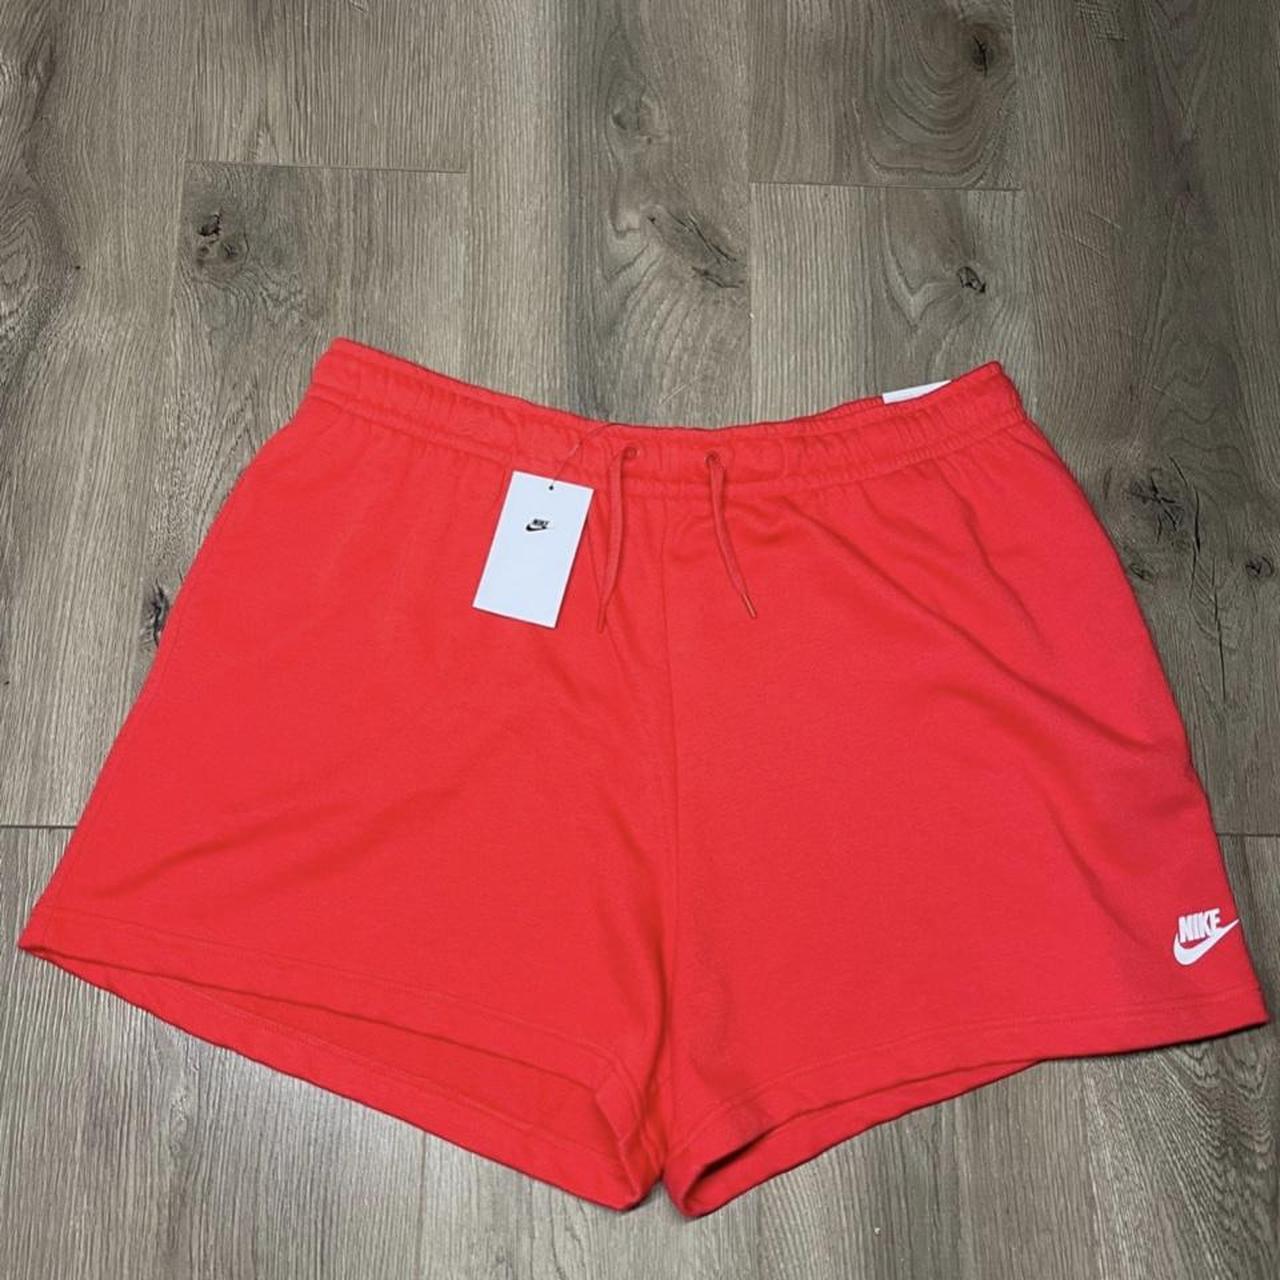 Nike Women's Red Shorts